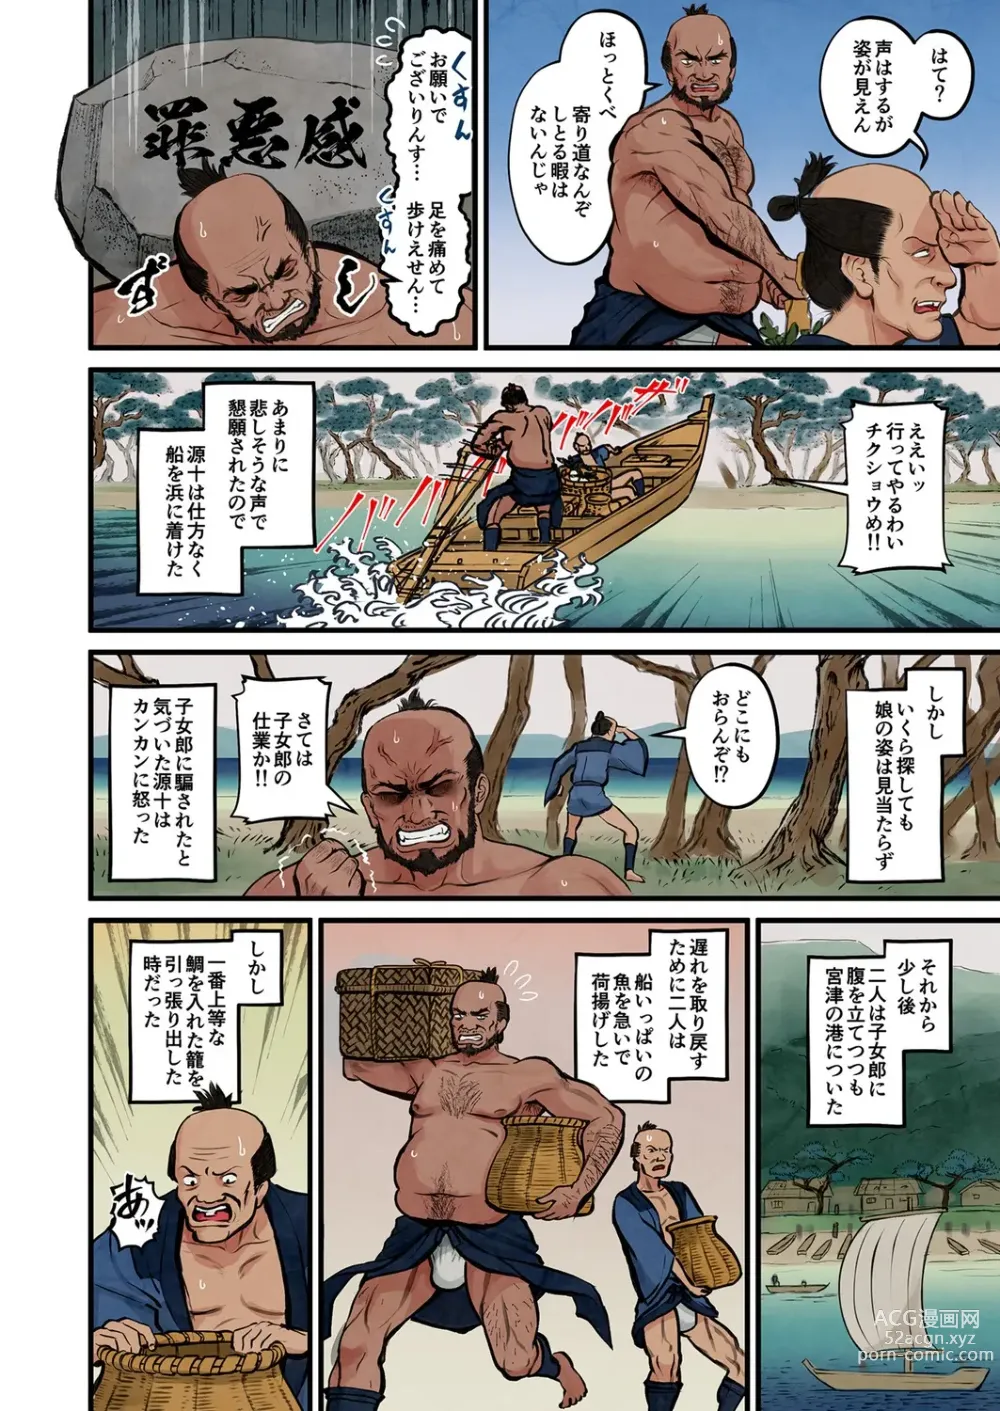 Page 5 of manga Nihon Mukashi Ero Banashi 3 “Hashidate Kojorou”